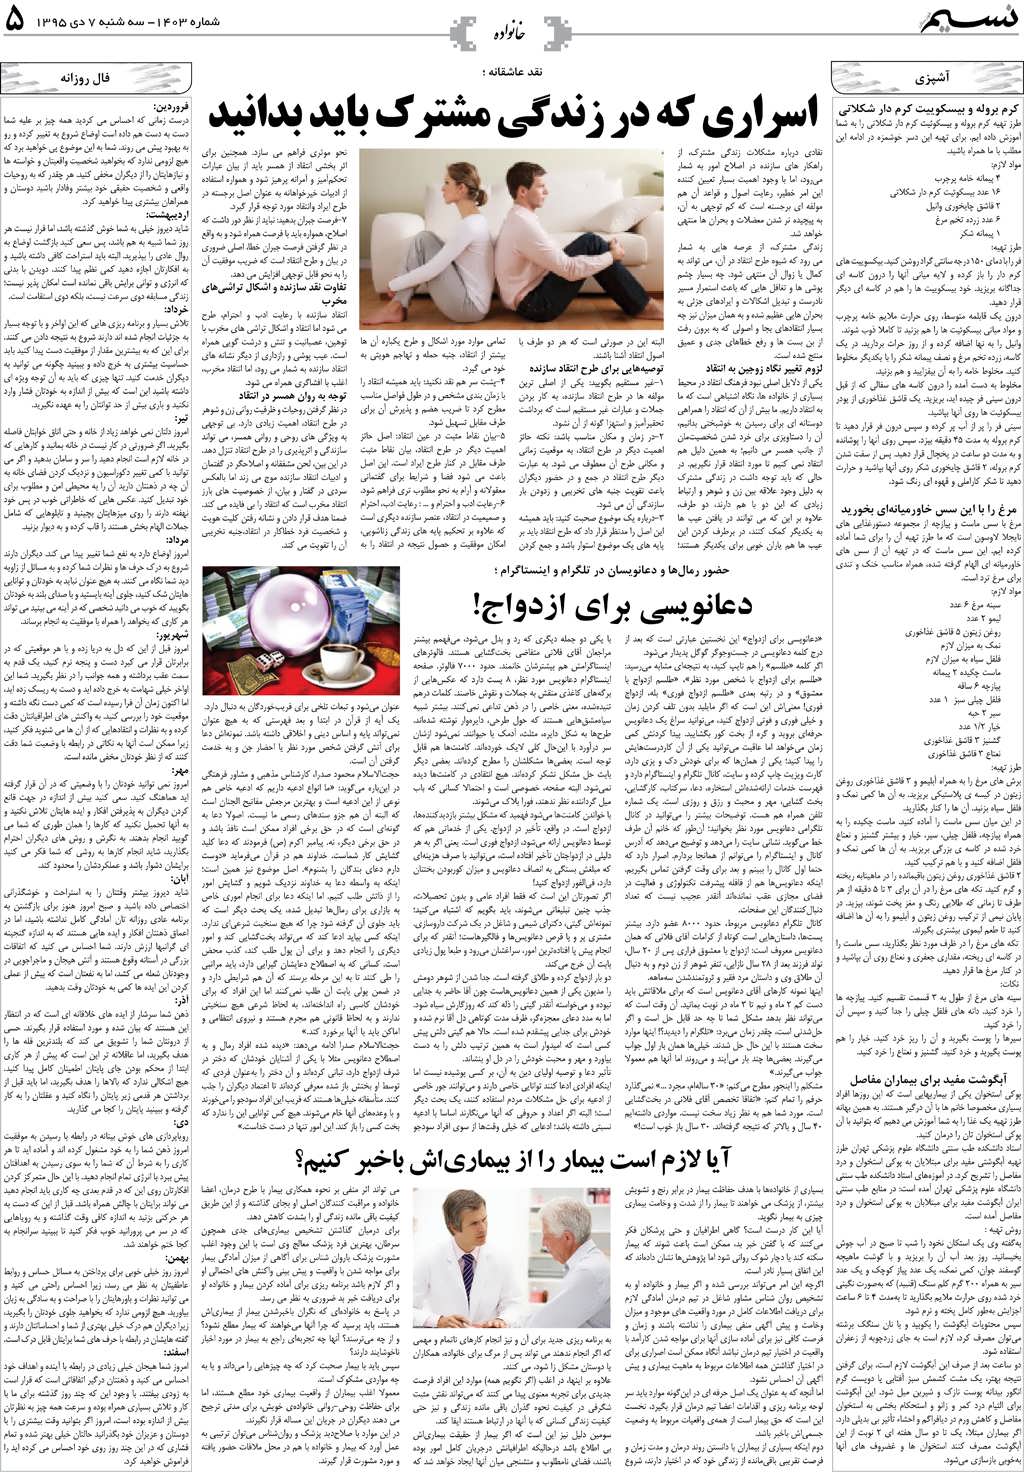 صفحه خانواده روزنامه نسیم شماره 1403